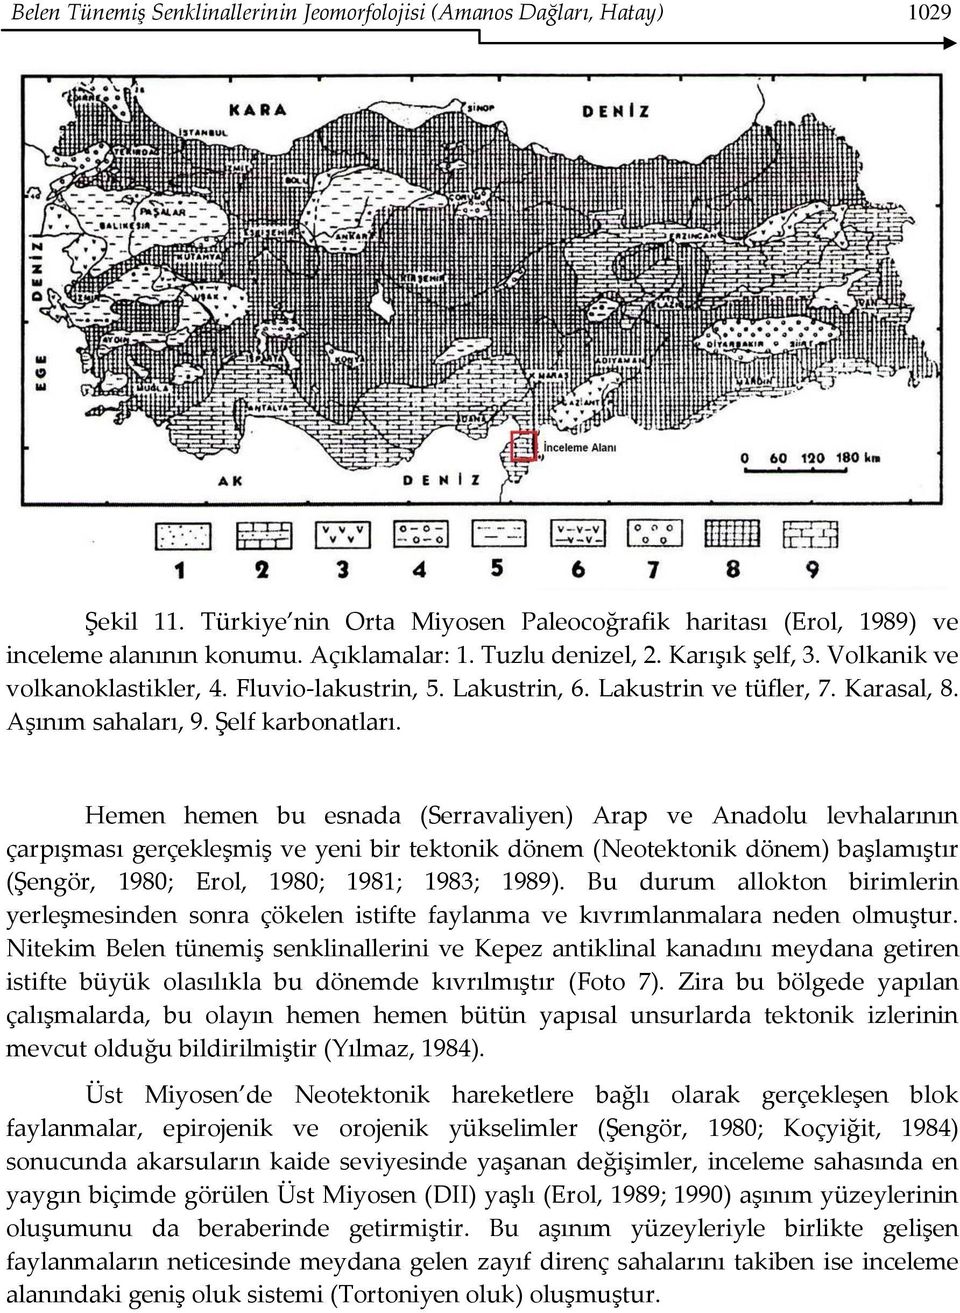 Hemen hemen bu esnada (Serravaliyen) Arap ve Anadolu levhalarının çarpışması gerçekleşmiş ve yeni bir tektonik dönem (Neotektonik dönem) başlamıştır (Şengör, 1980; Erol, 1980; 1981; 1983; 1989).